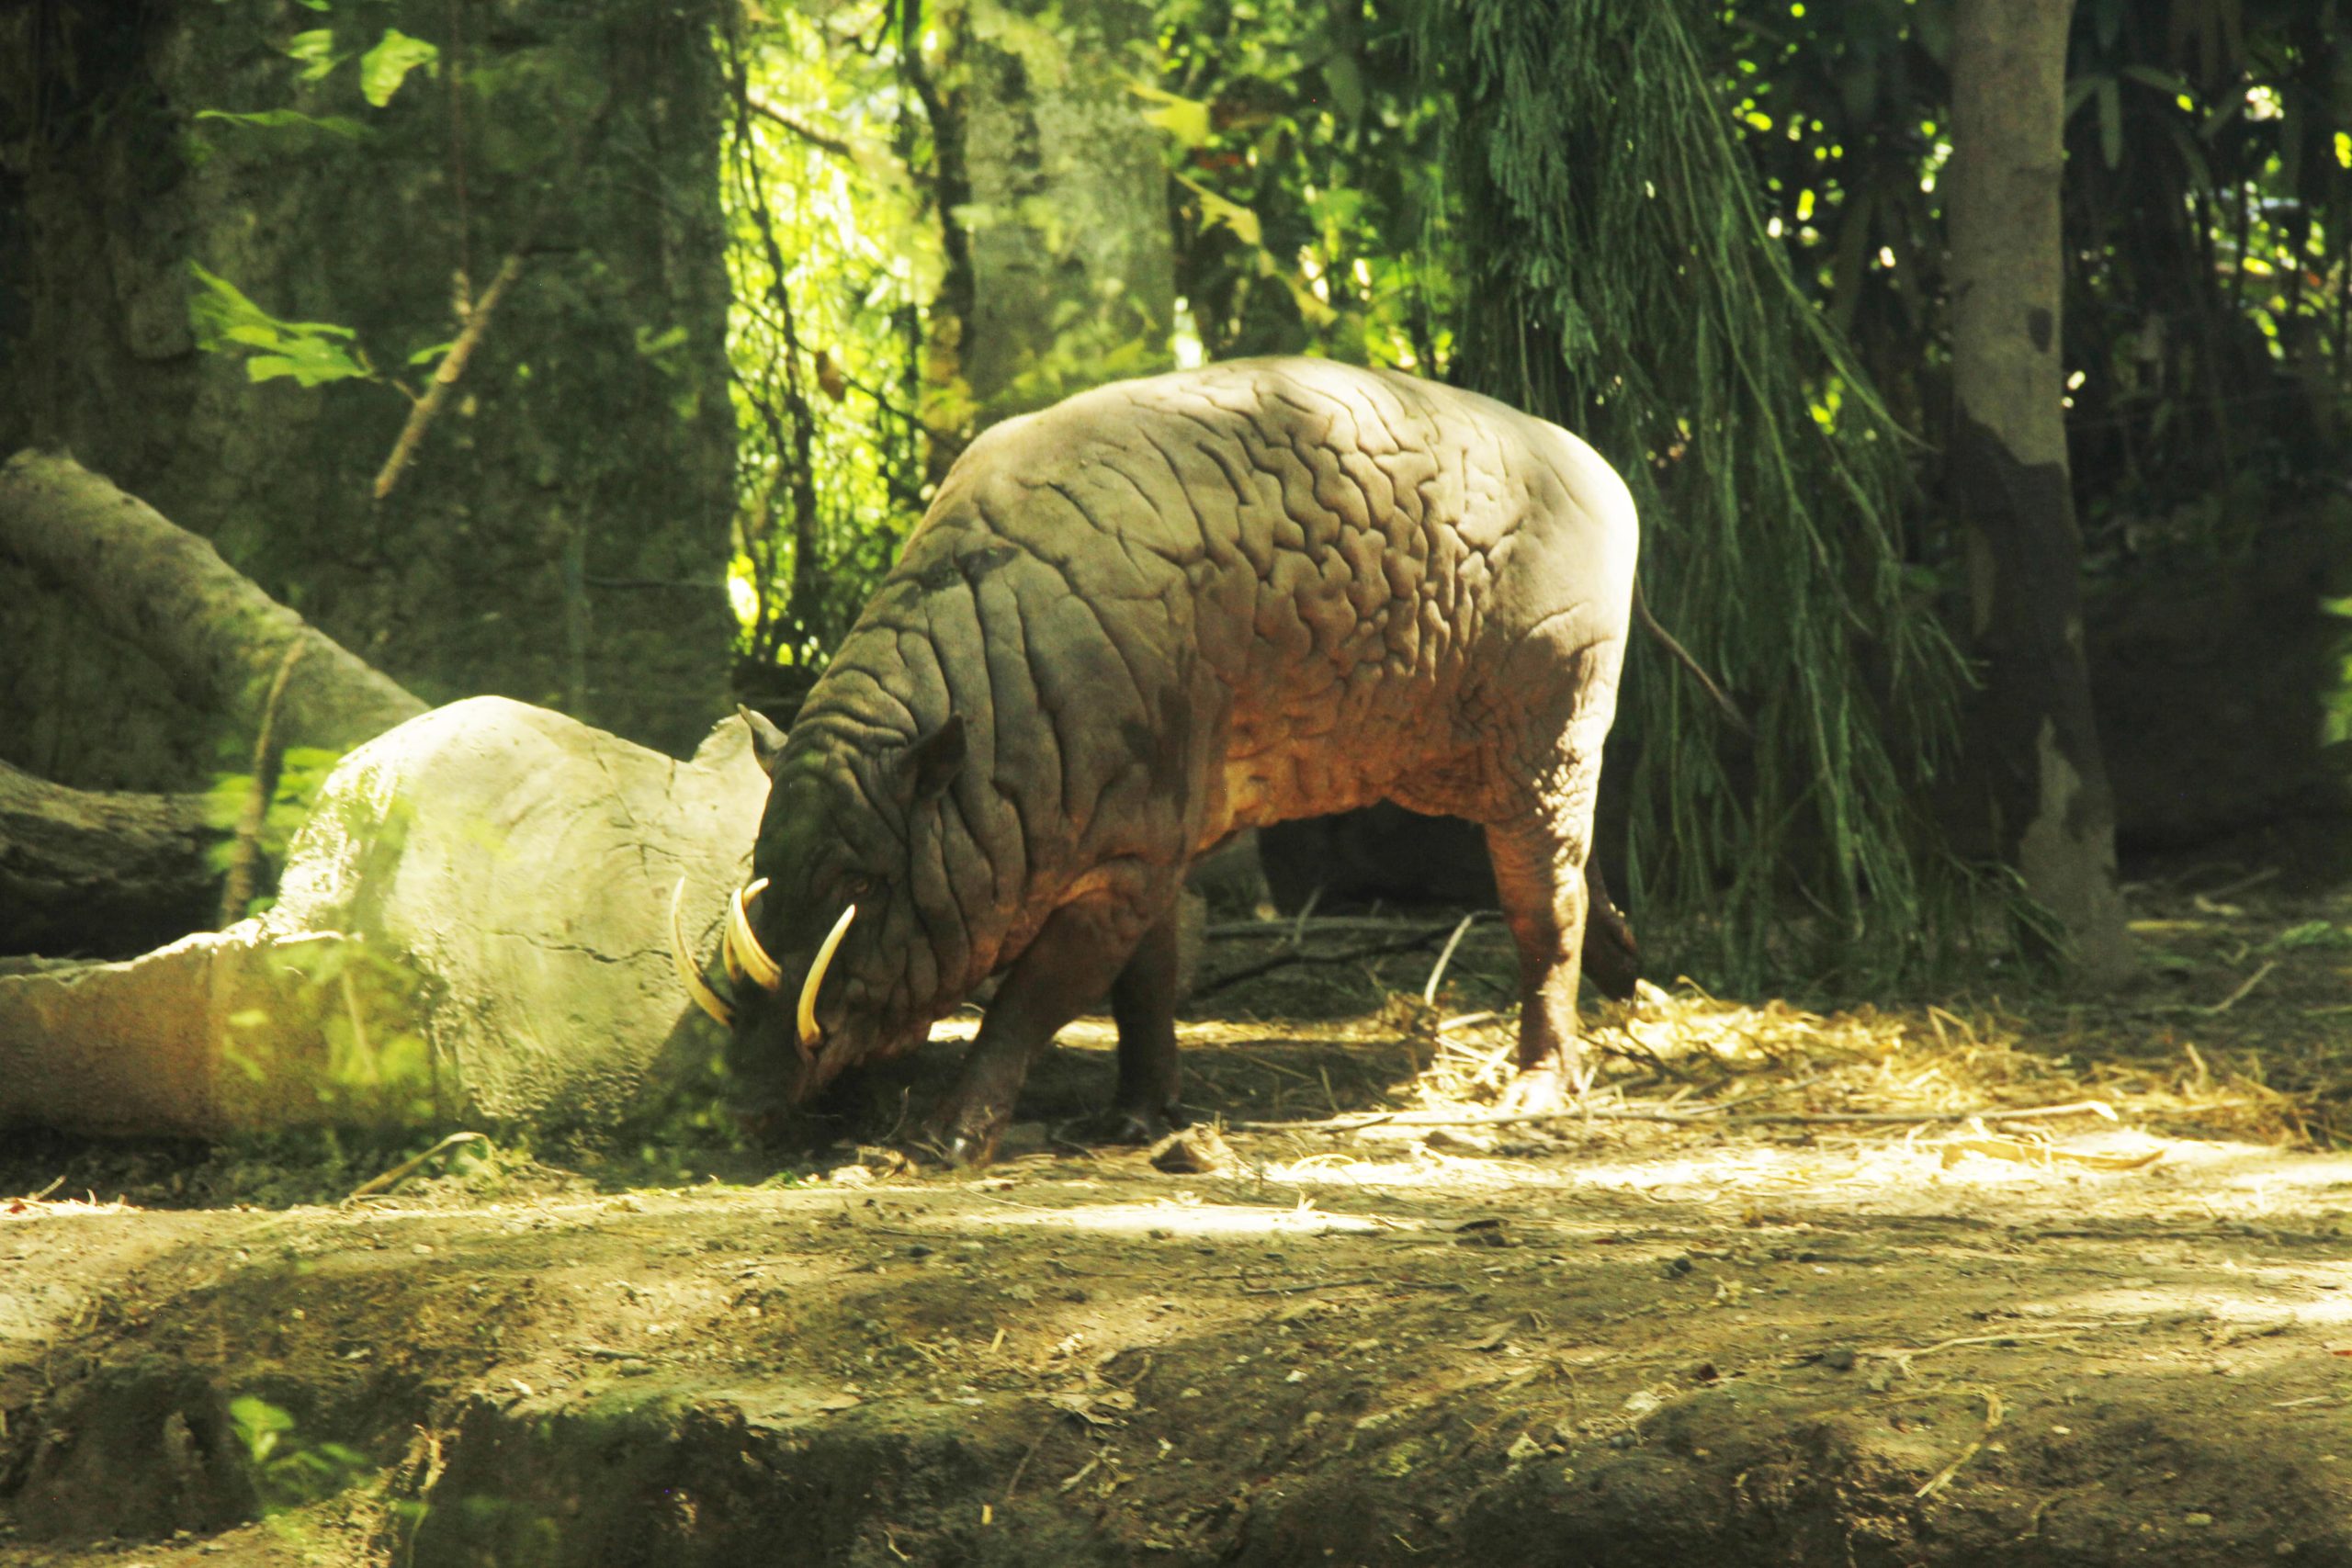 Let's Meet the Pig-Deer Family! - Bali Safari Marine Park